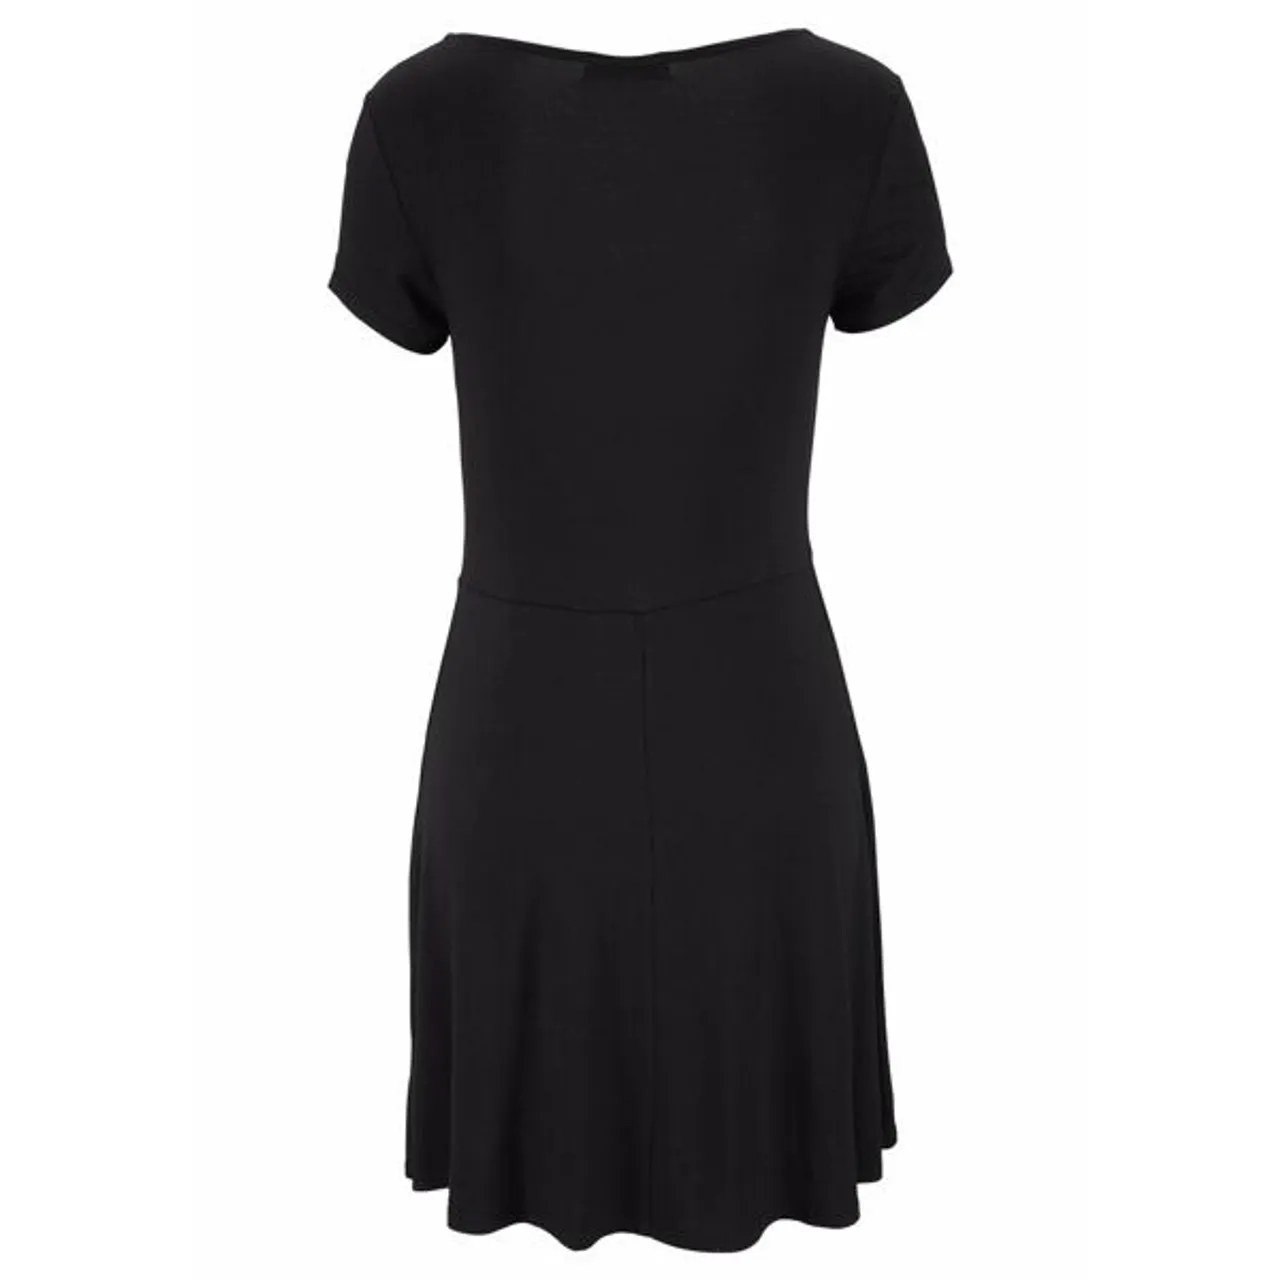 Sommerkleid LASCANA Gr. 34, N-Gr, schwarz Damen Kleider Strandkleider mit Zierbändern am Ausschnitt, Minikleid Stretch, Strandkleid Bestseller